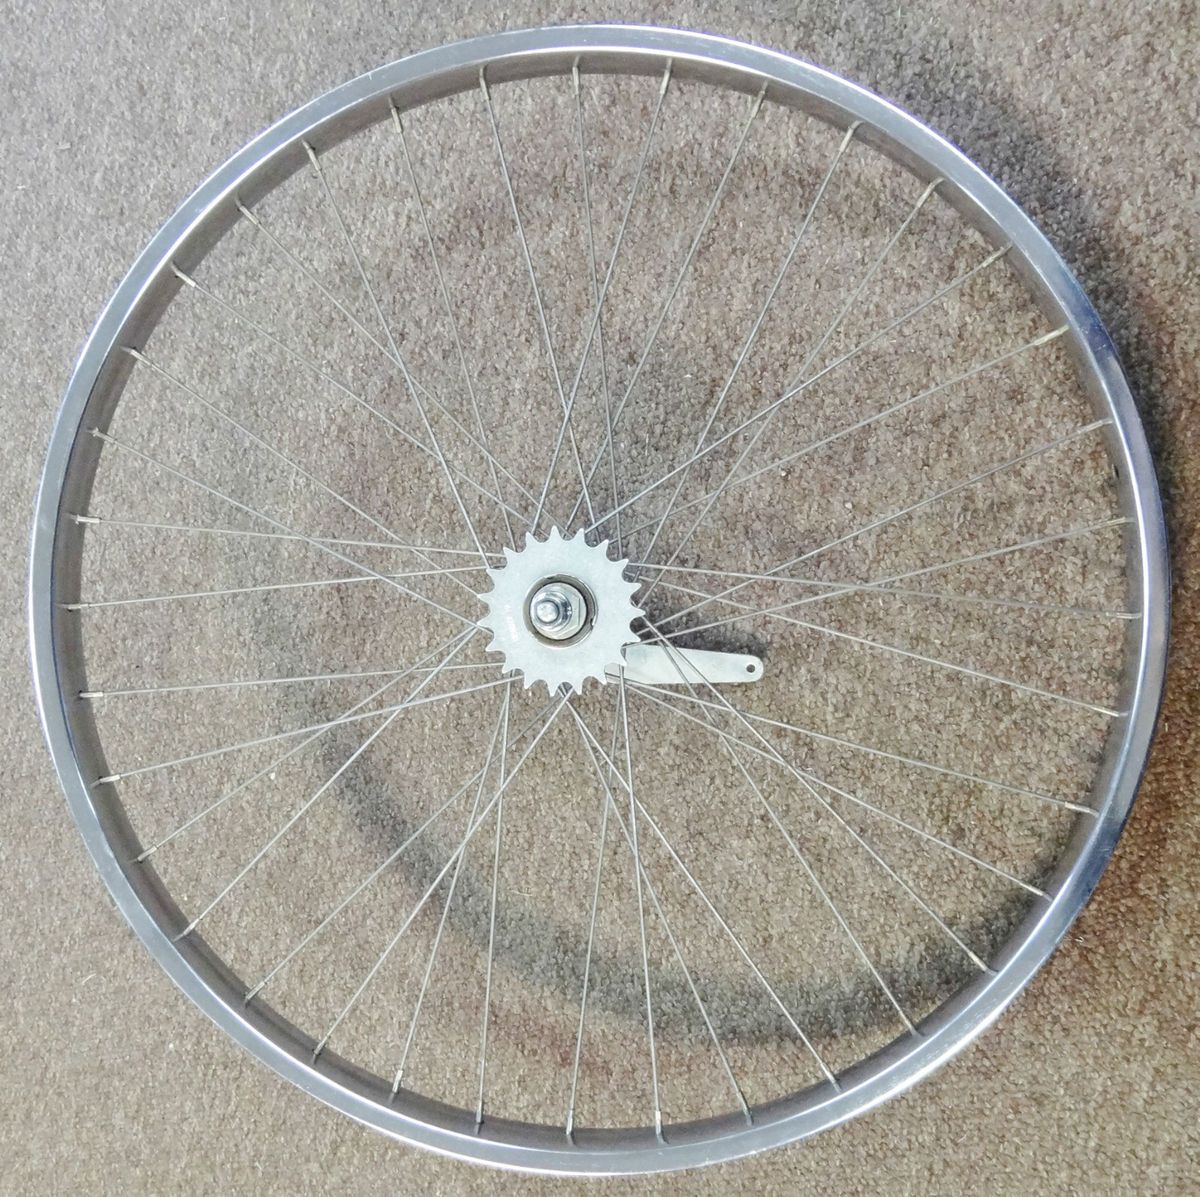  Bike Araya Schwinn Tubular s 7 Coaster Brake Wheel Bendix Hub